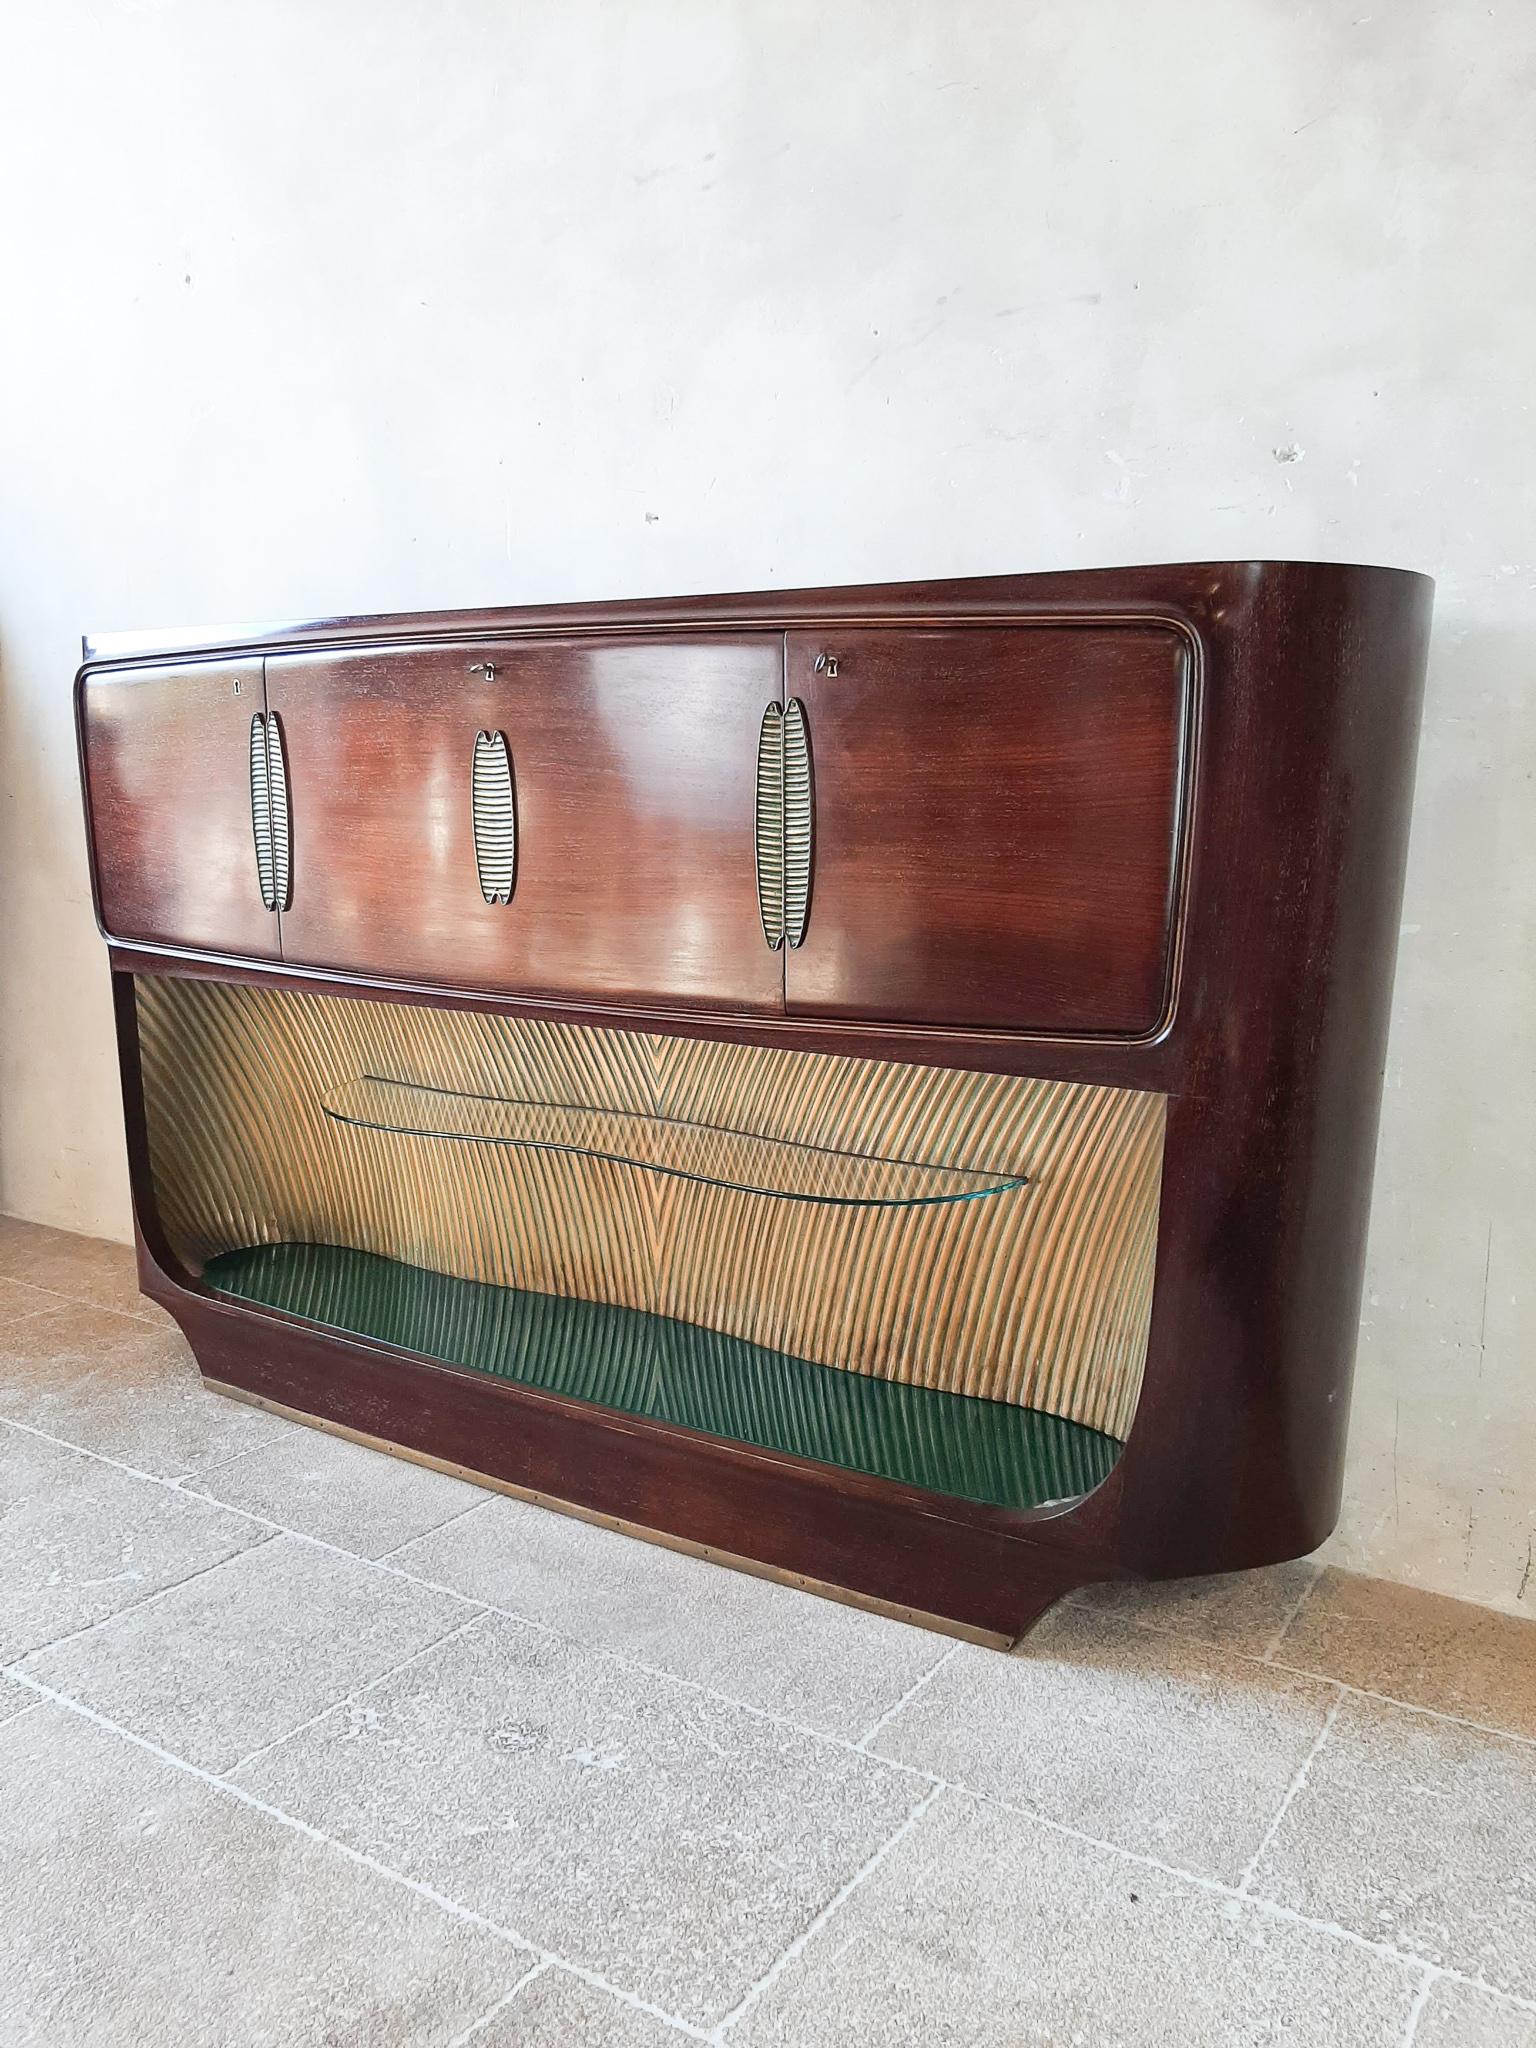 Vittorio Dassi entwirft eine Trockenbar / Anrichte für Palazzi dell'Arte Cantù.

Barschrank aus Palisanderholz mit zwei Seitentüren, verspiegeltem zentralen Barfach mit Klappe und Beleuchtung, Frontdekoration aus Messing, obere und untere Platte